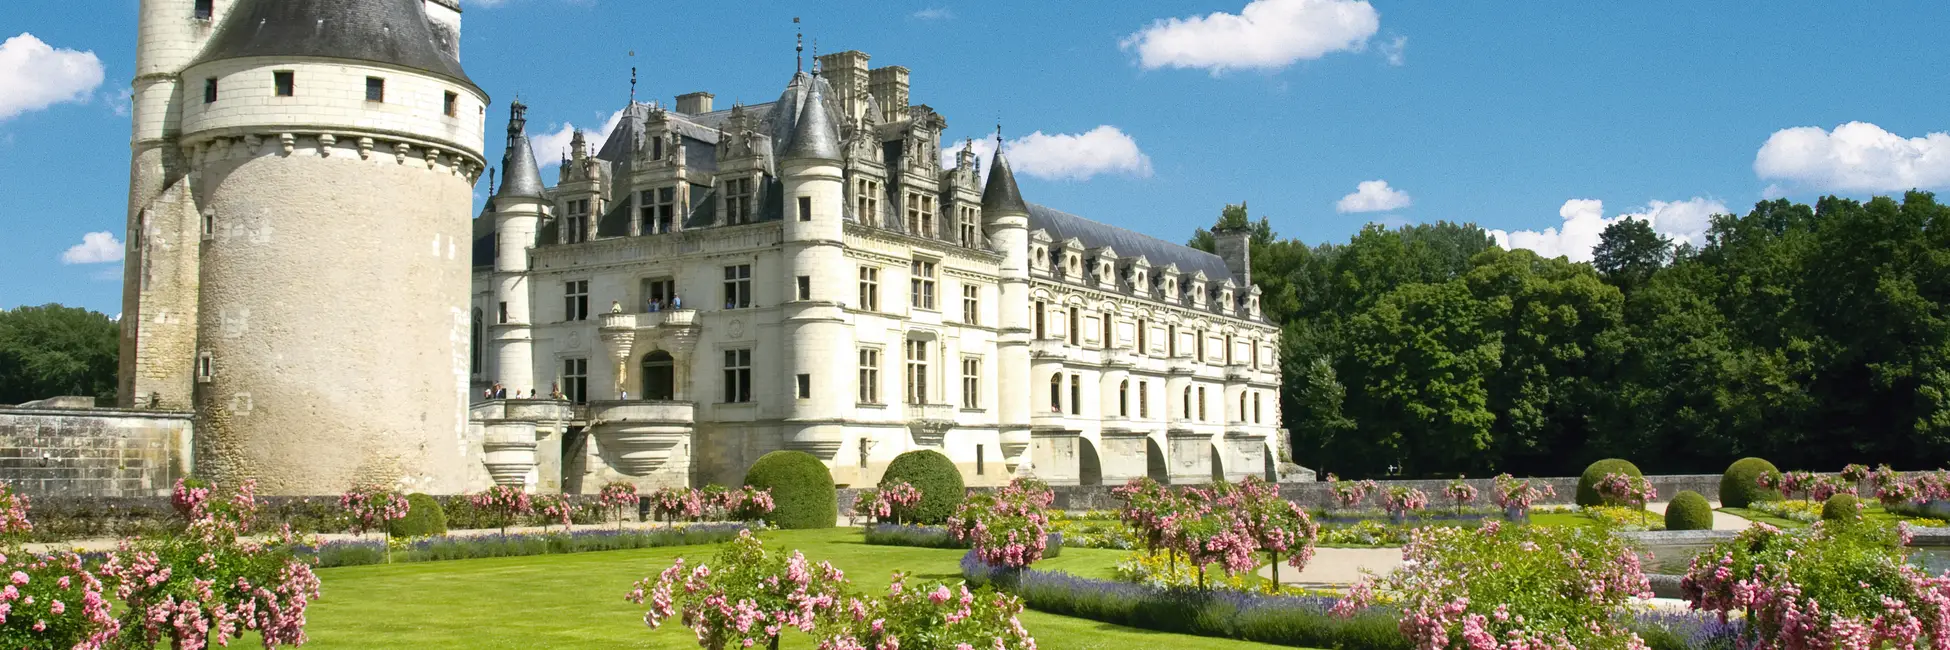 Le château de Chenonceau et ses jardins 